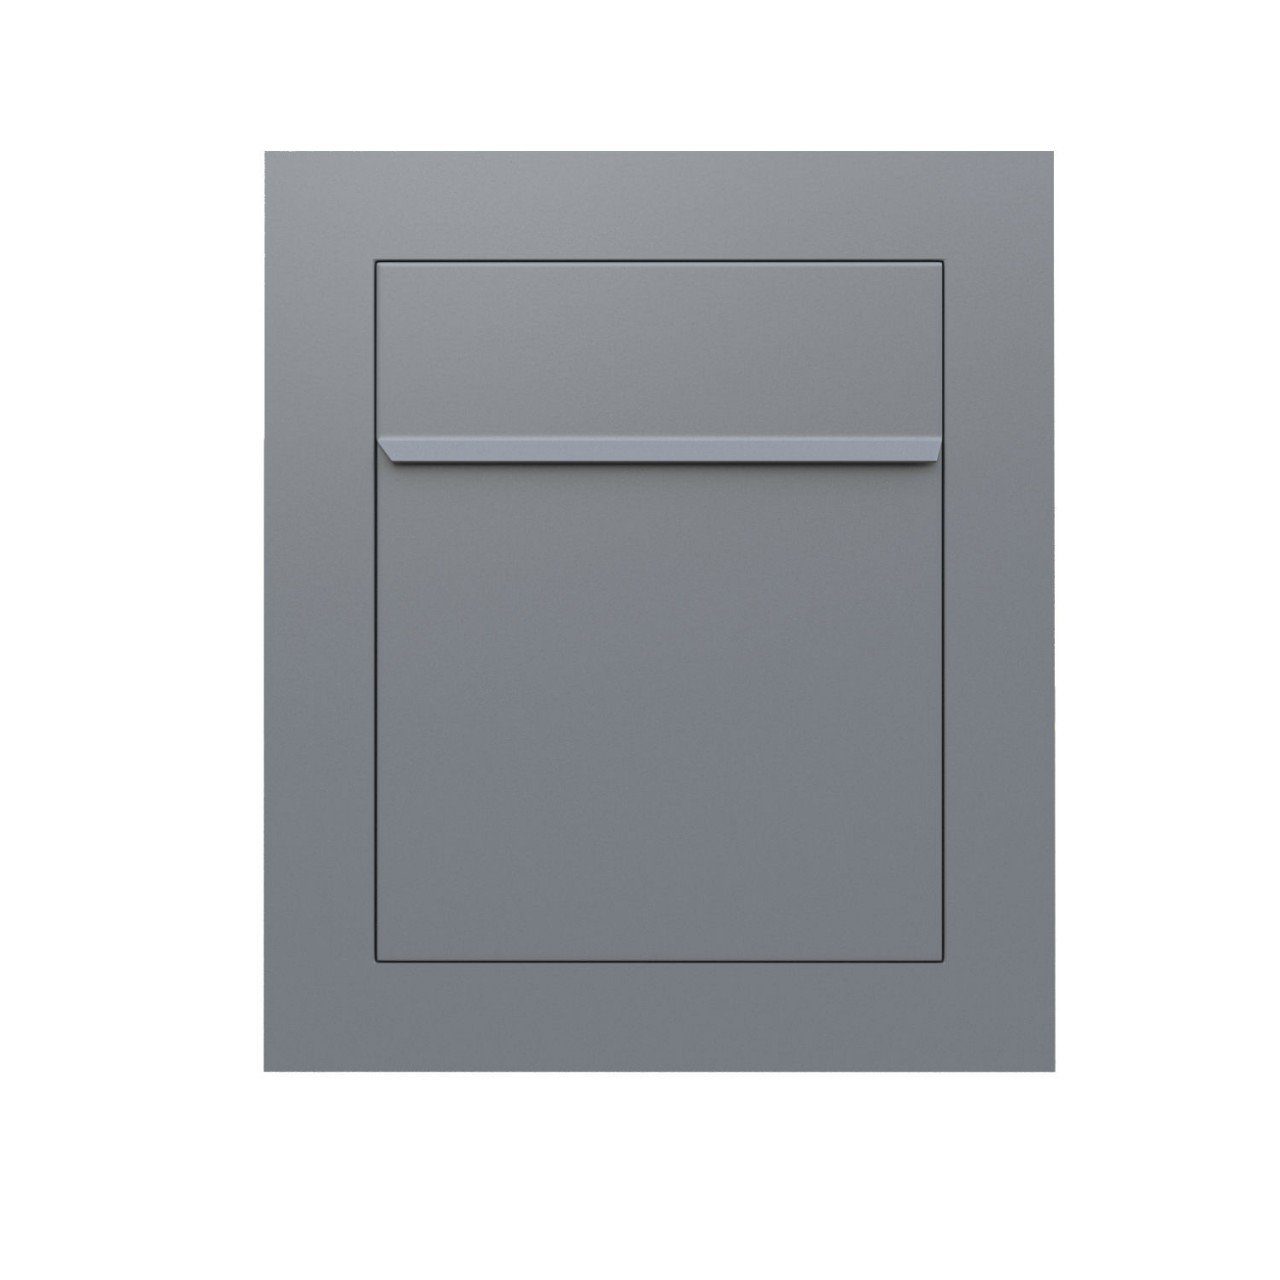 Einbaubriefkasten Bari Metallic Grau Briefkasten in Bravios